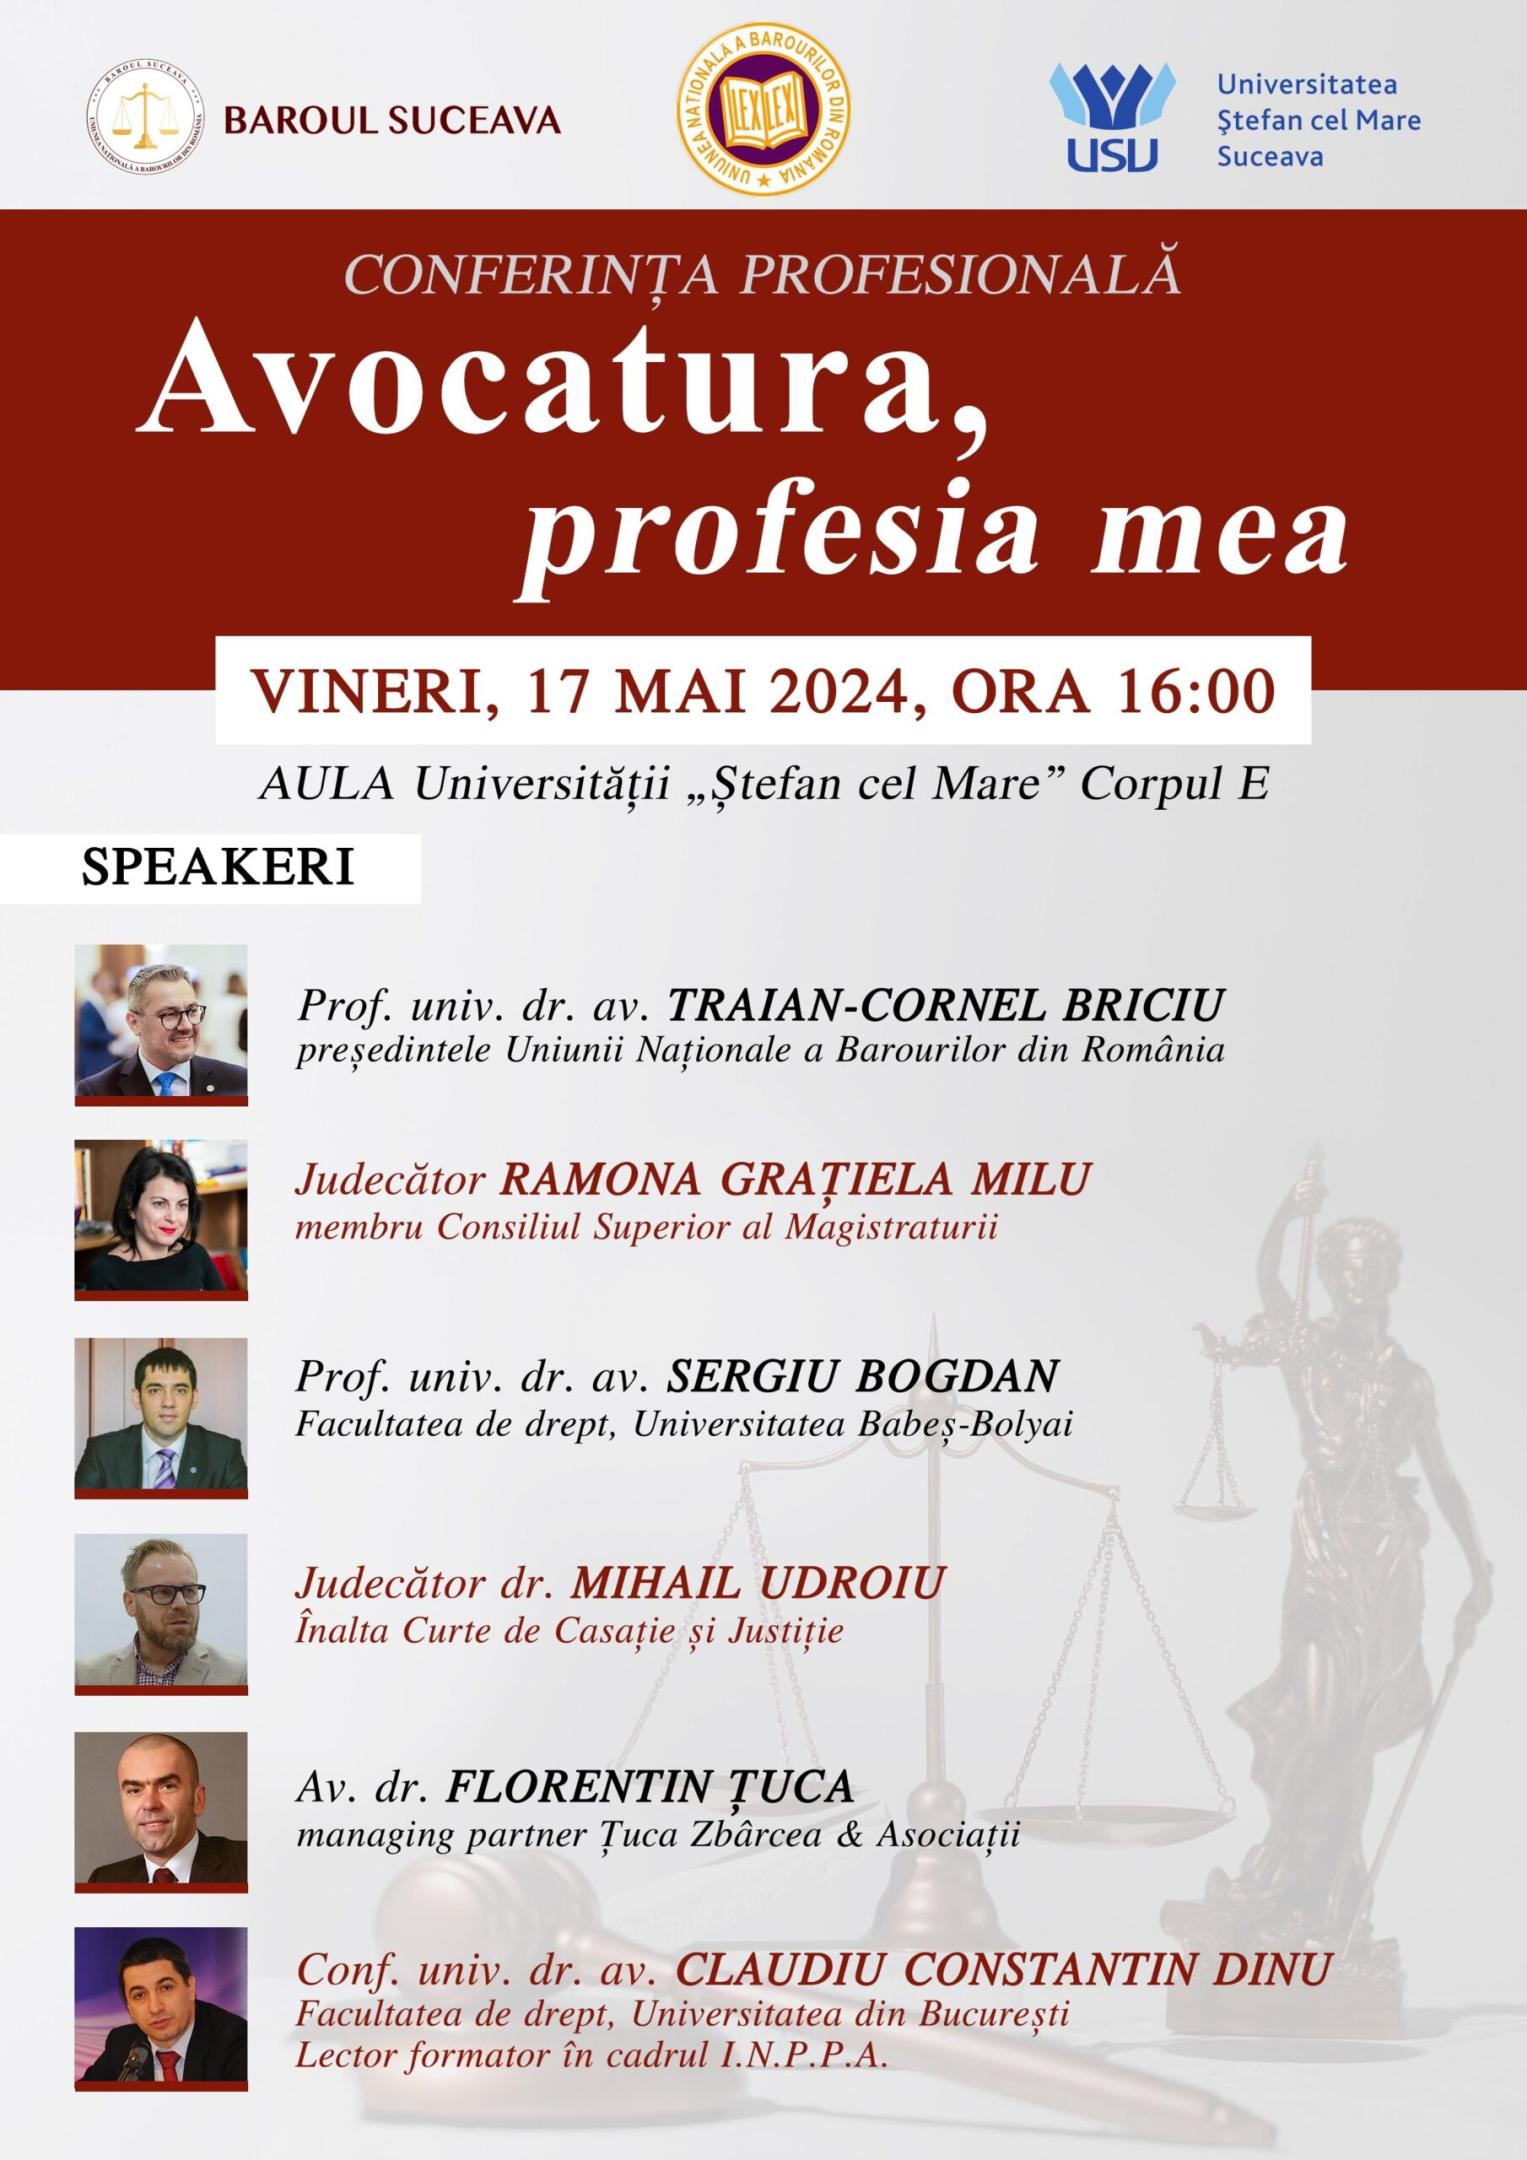 Conferința profesională ”Avocatura, profesia mea” organizată de Baroul Suceava în parteneriat cu Universitatea ”Ștefan cel Mare” din Suceava